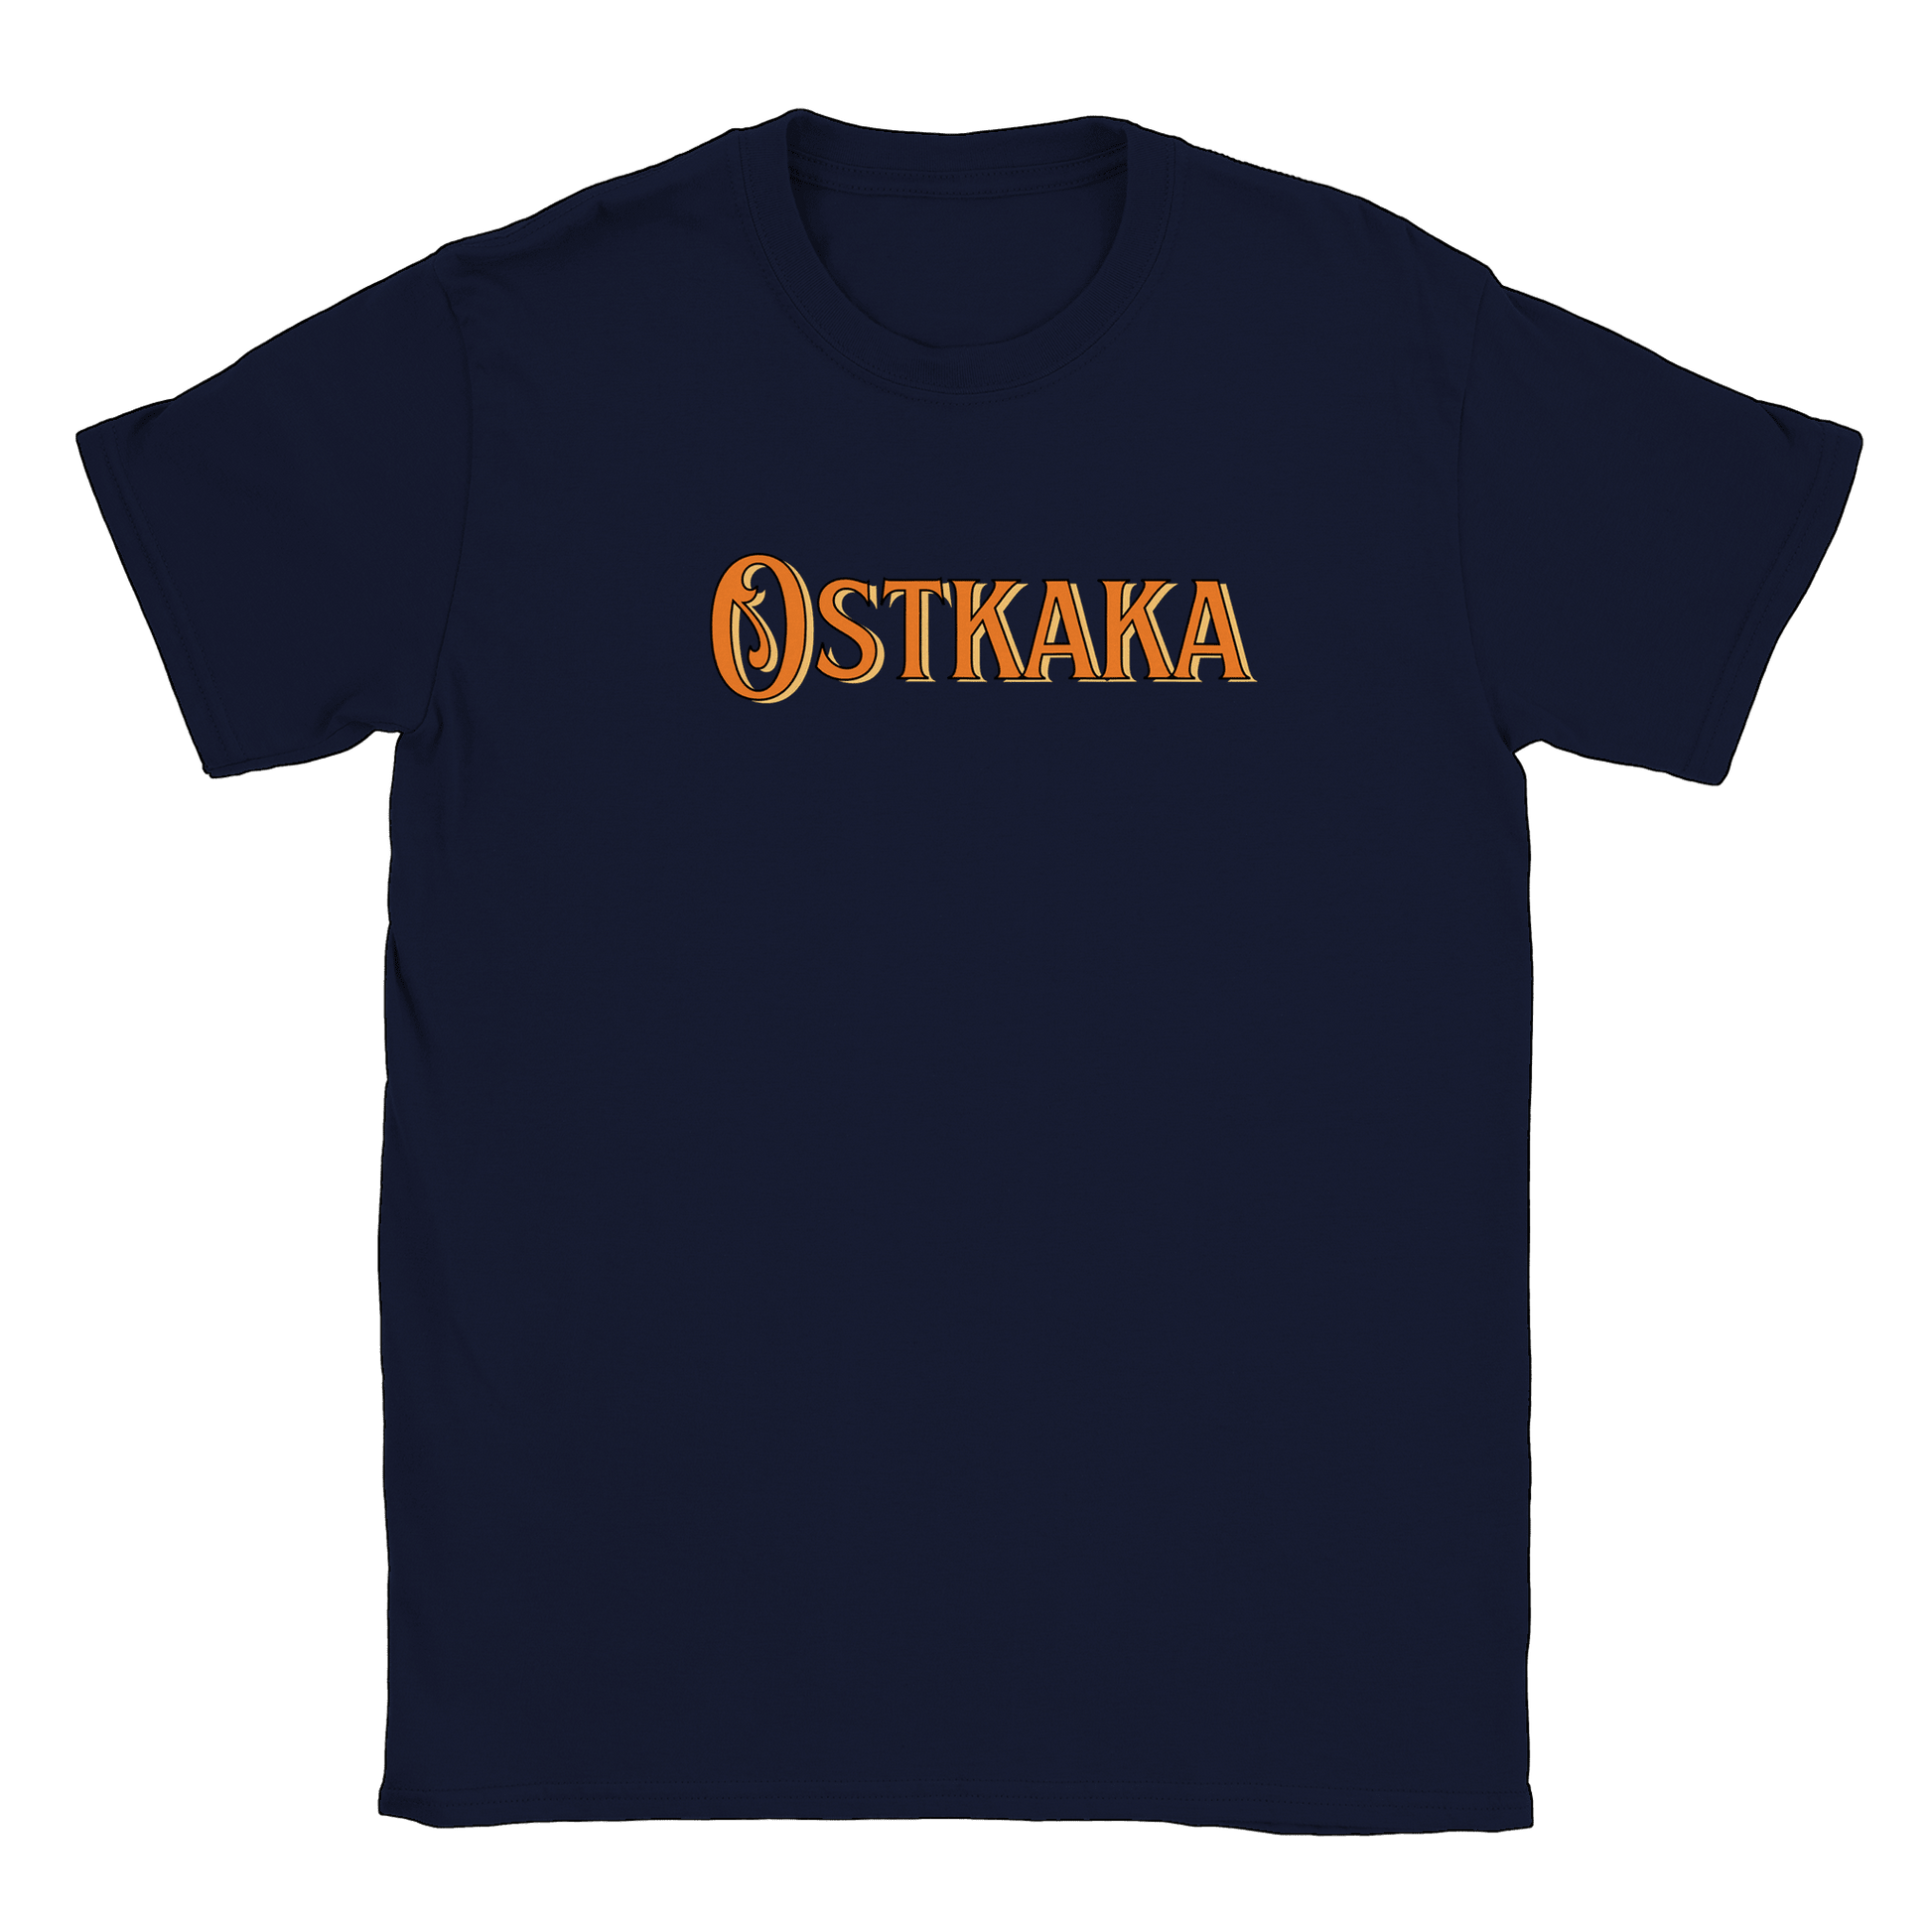 Ostkaka - T-shirt Navy